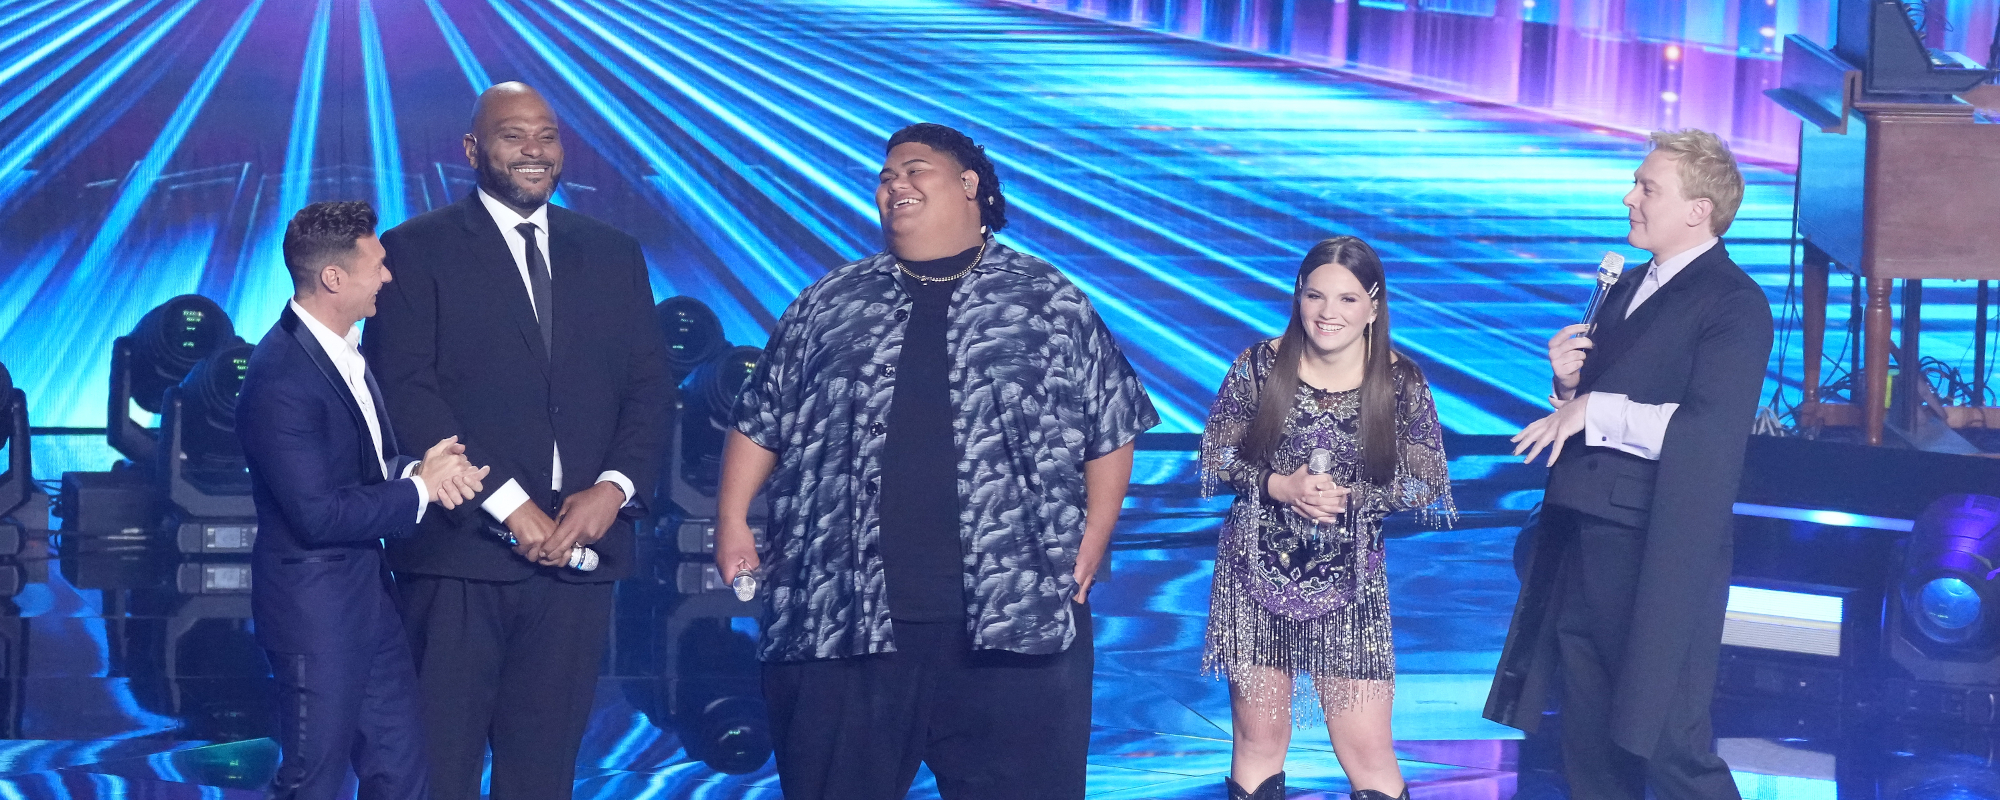 ‘American Idol’ Crowns Winner of Season 21